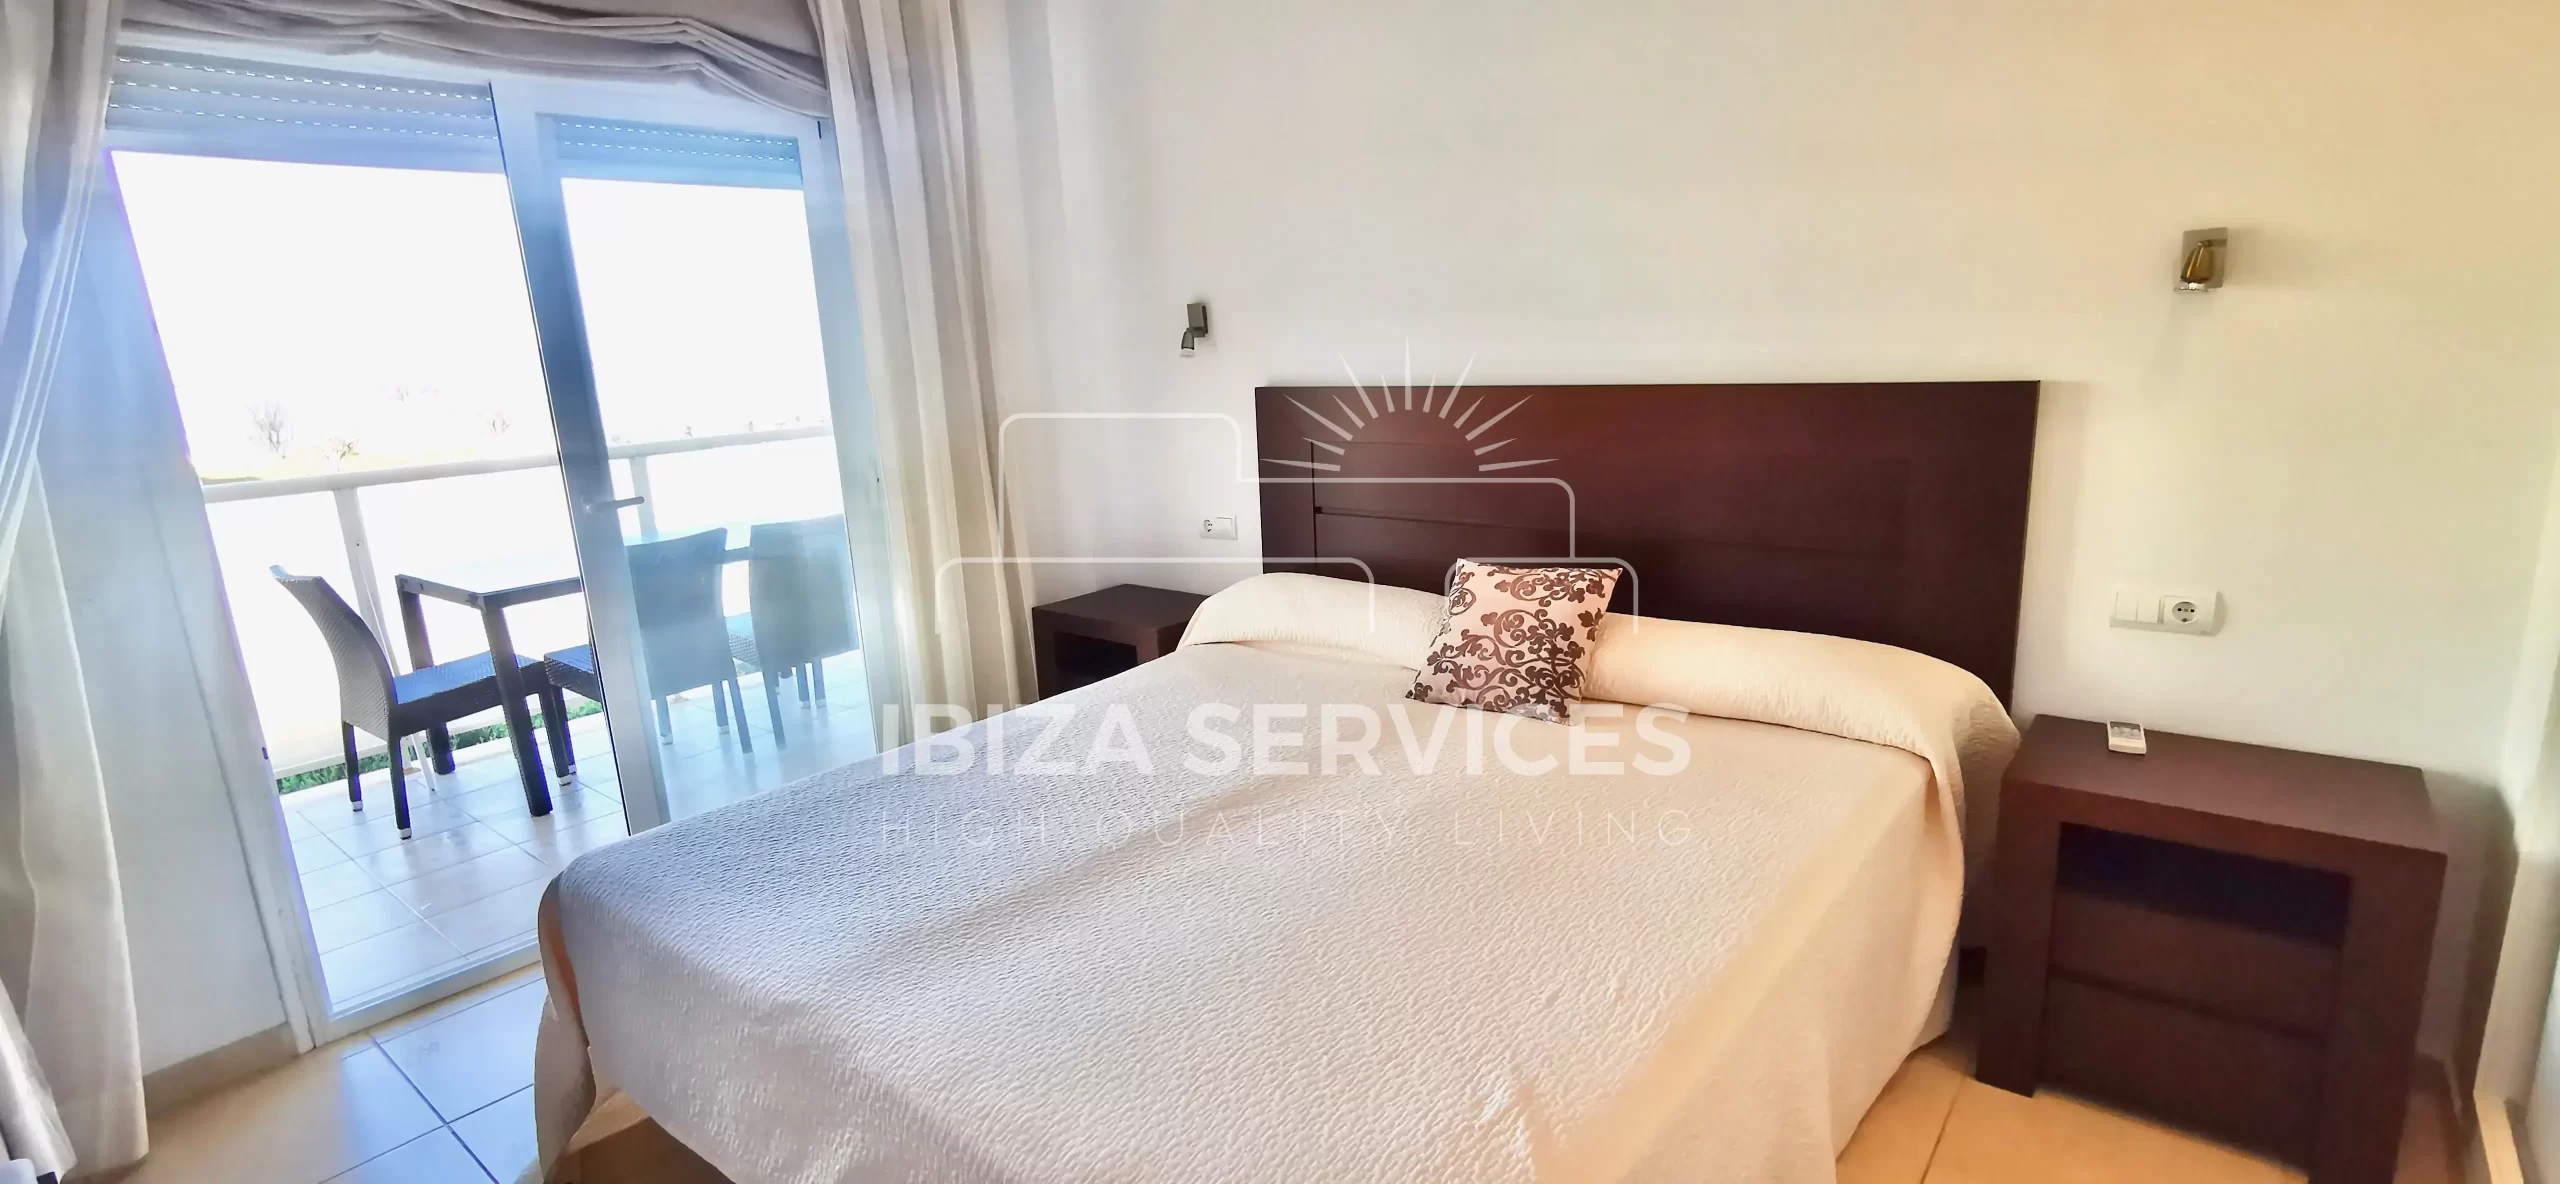 Espacioso Apartamento con Vistas al Mar en Venta en la Costa Oeste de Ibiza